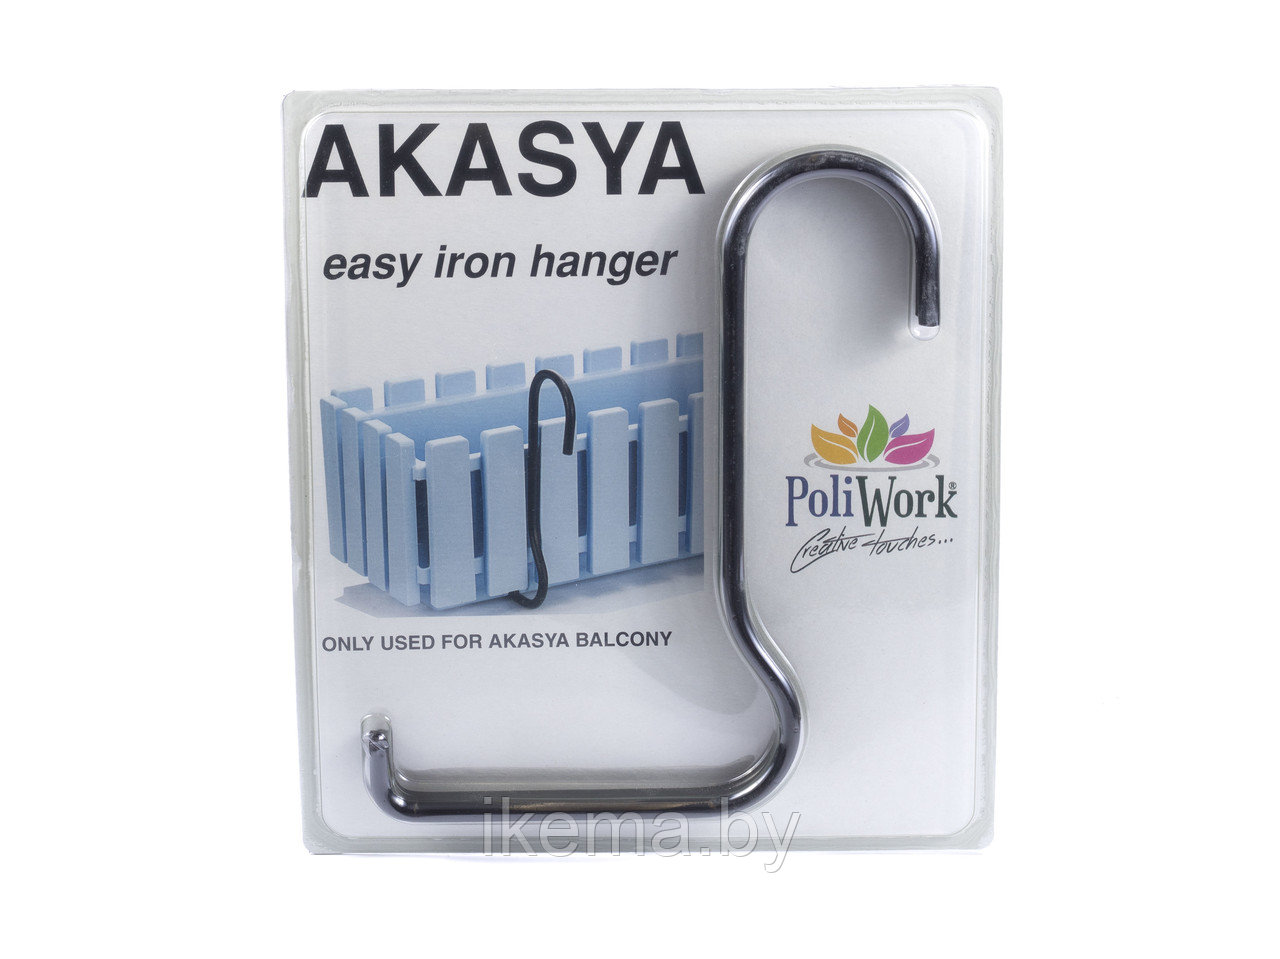 ДЕРЖАТЕЛЬ металлический для кашпо “Akasya Balcony” (арт. AB60IEH, код 499464)